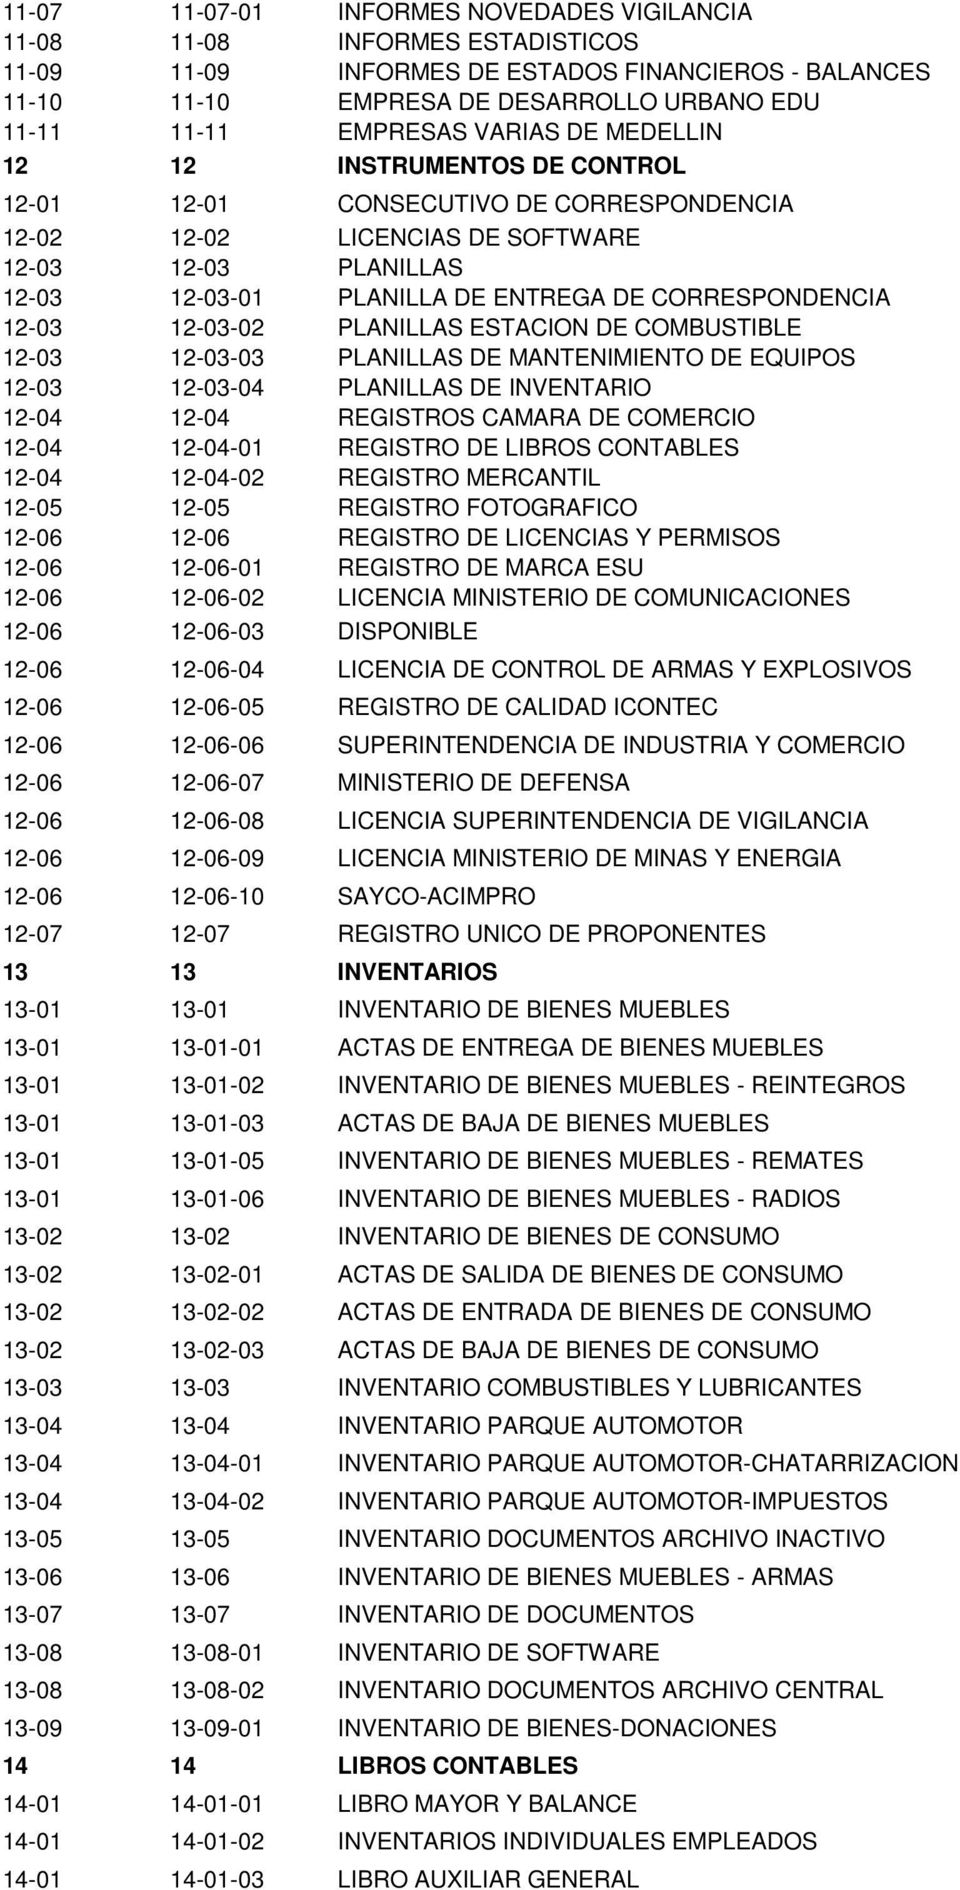 CORRESPONDENCIA 12-03 12-03-02 PLANILLAS ESTACION DE COMBUSTIBLE 12-03 12-03-03 PLANILLAS DE MANTENIMIENTO DE EQUIPOS 12-03 12-03-04 PLANILLAS DE INVENTARIO 12-04 12-04 REGISTROS CAMARA DE COMERCIO